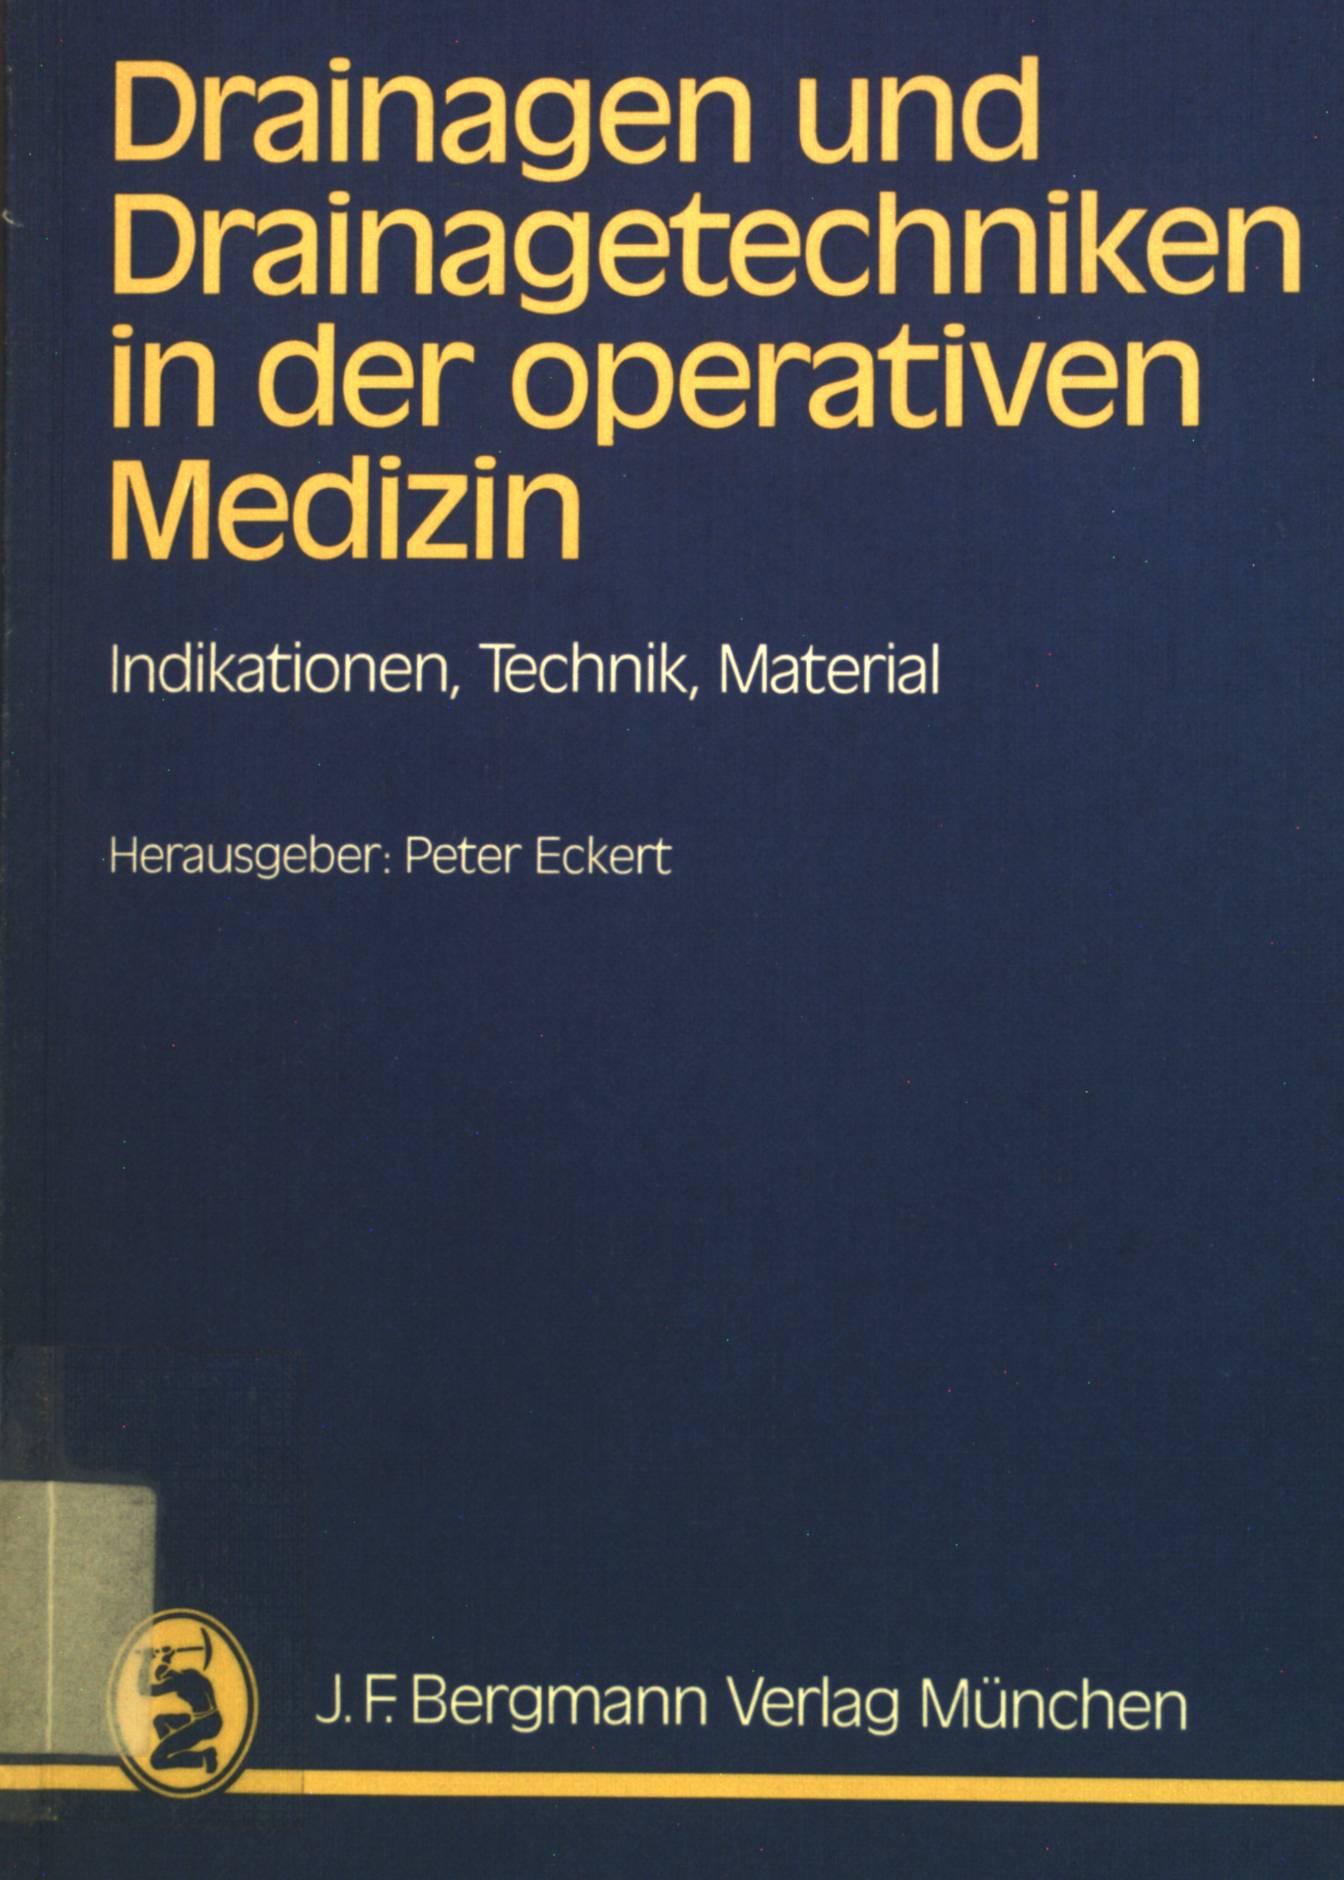 Drainagen und Drainagetechniken in der operativen Medizin: Indikationen, Technik, Material. - Eckert, P.